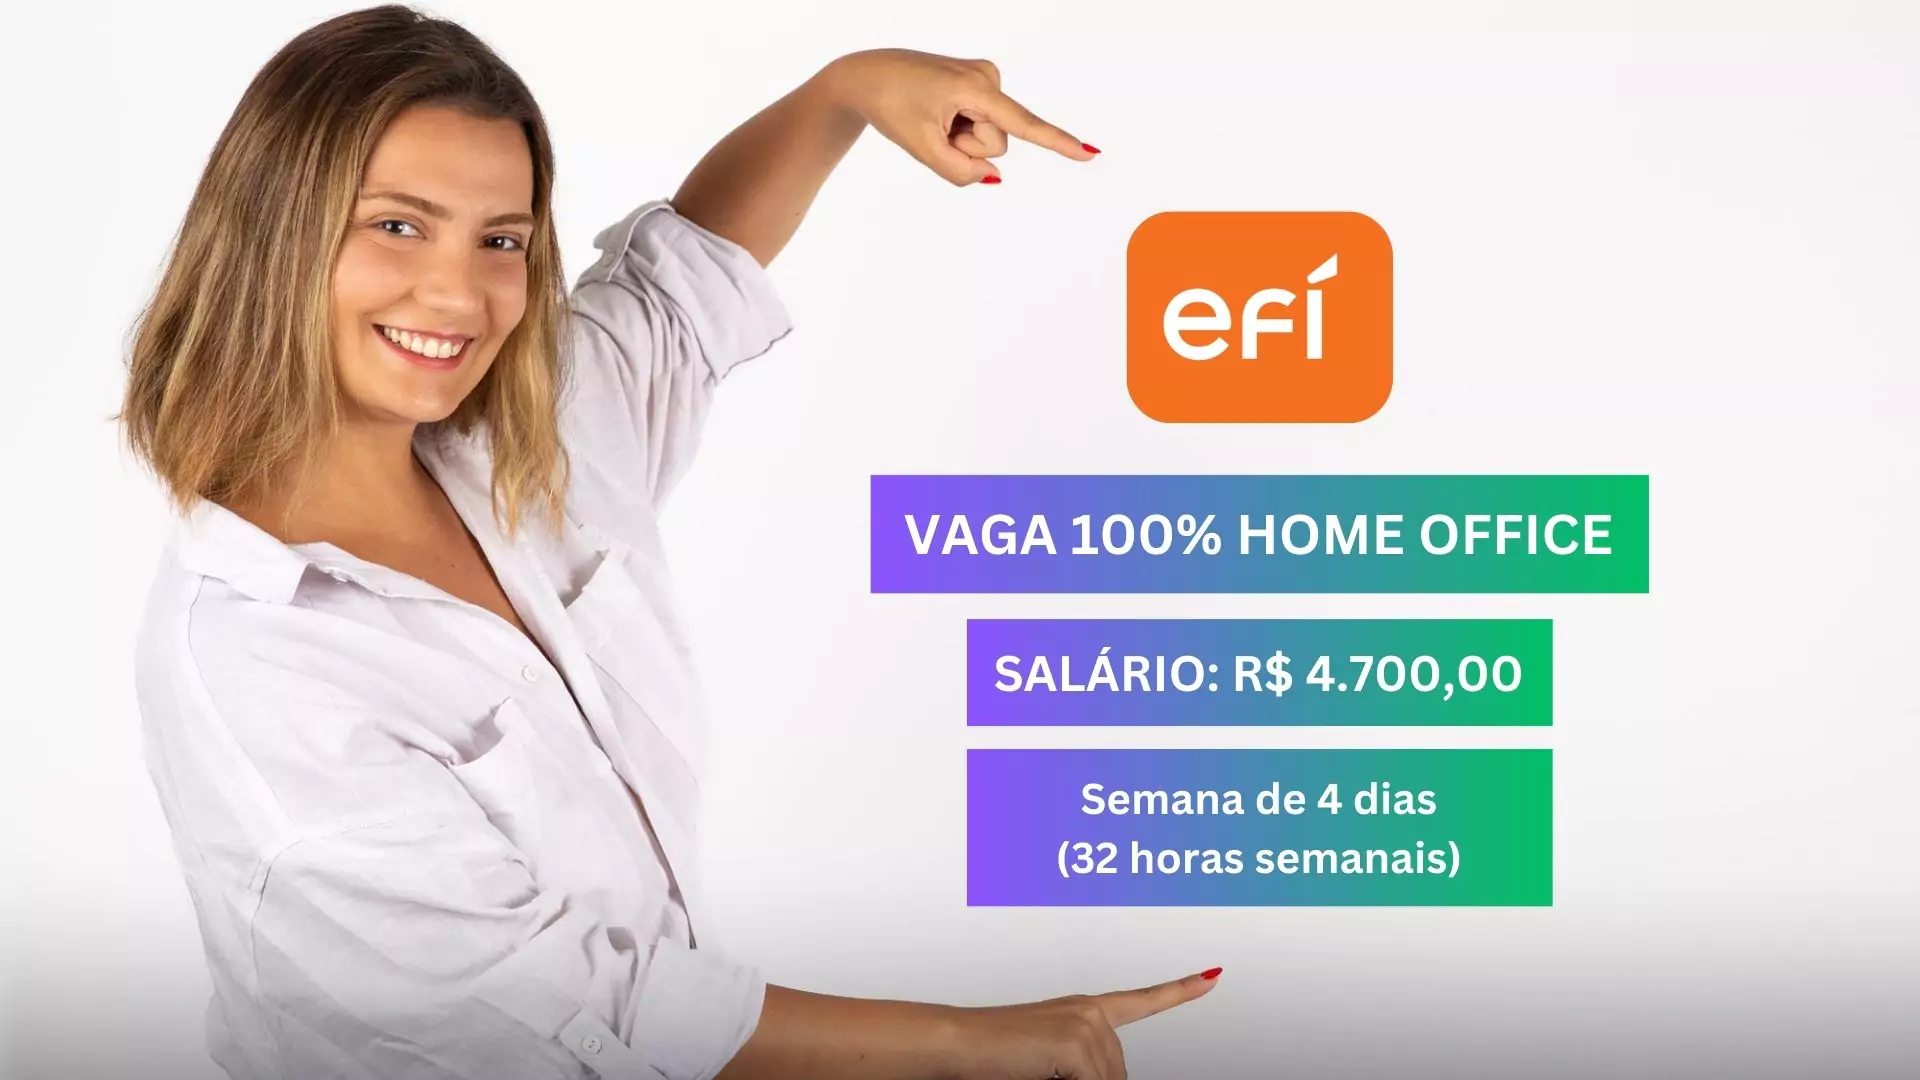 ANALISTA DE PRODUTOS - Vaga Aberta pela Efí com Salário de R$ 4.700,00 e 100% Home Office